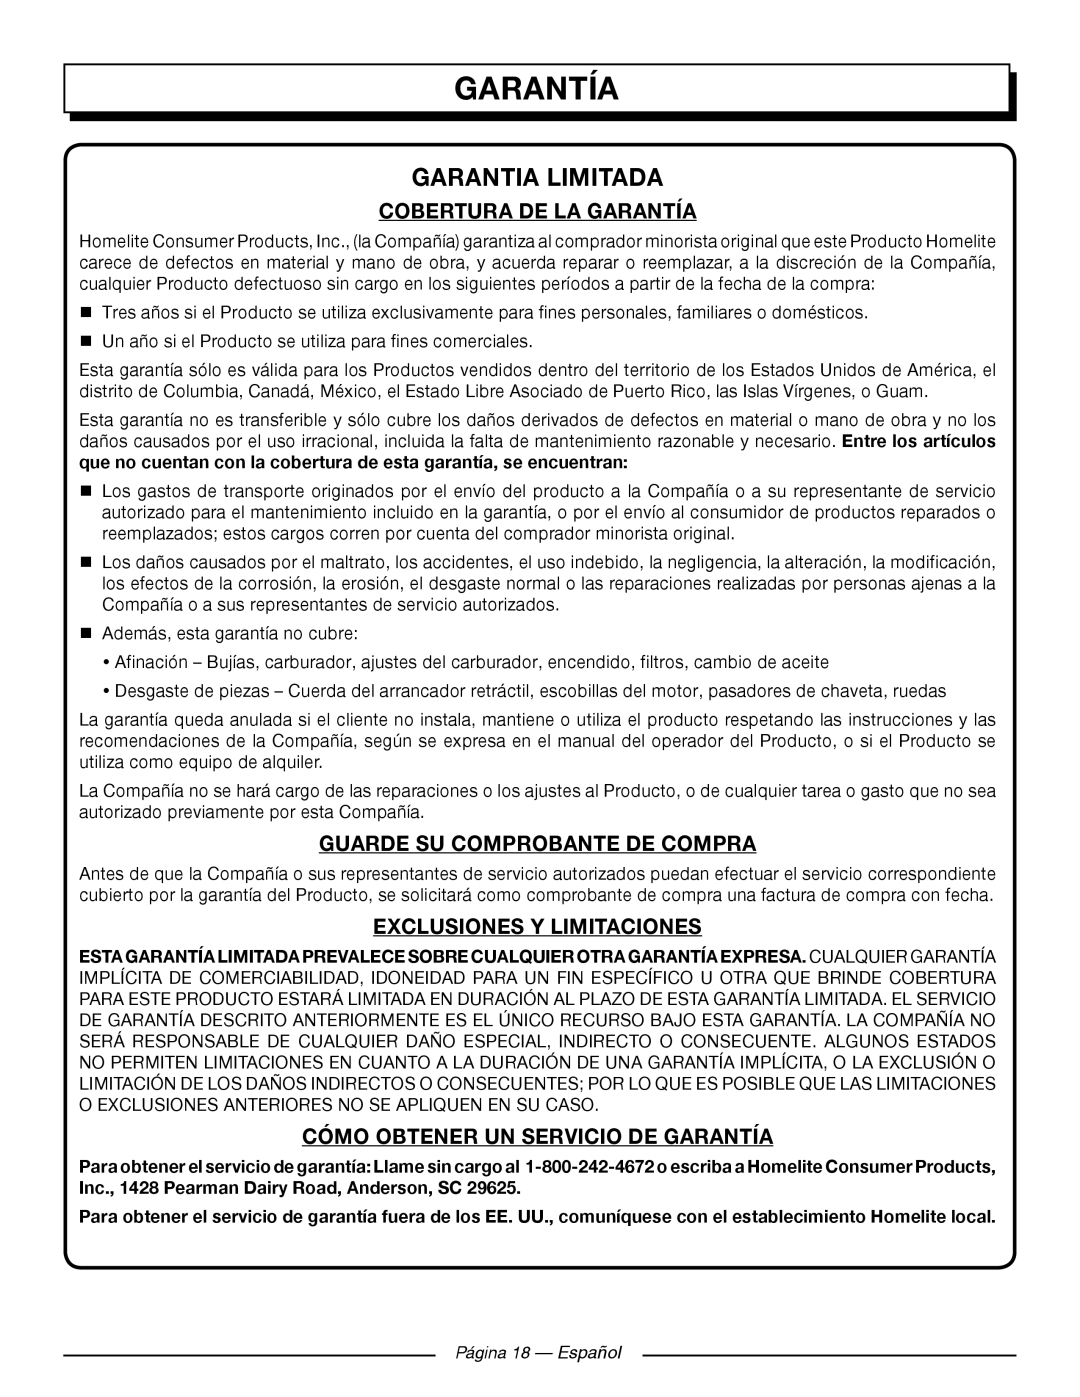 Homelite UT905011 Garantia Limitada, Cobertura De La Garantía, Guarde Su Comprobante De Compra, Página 18 - Español 